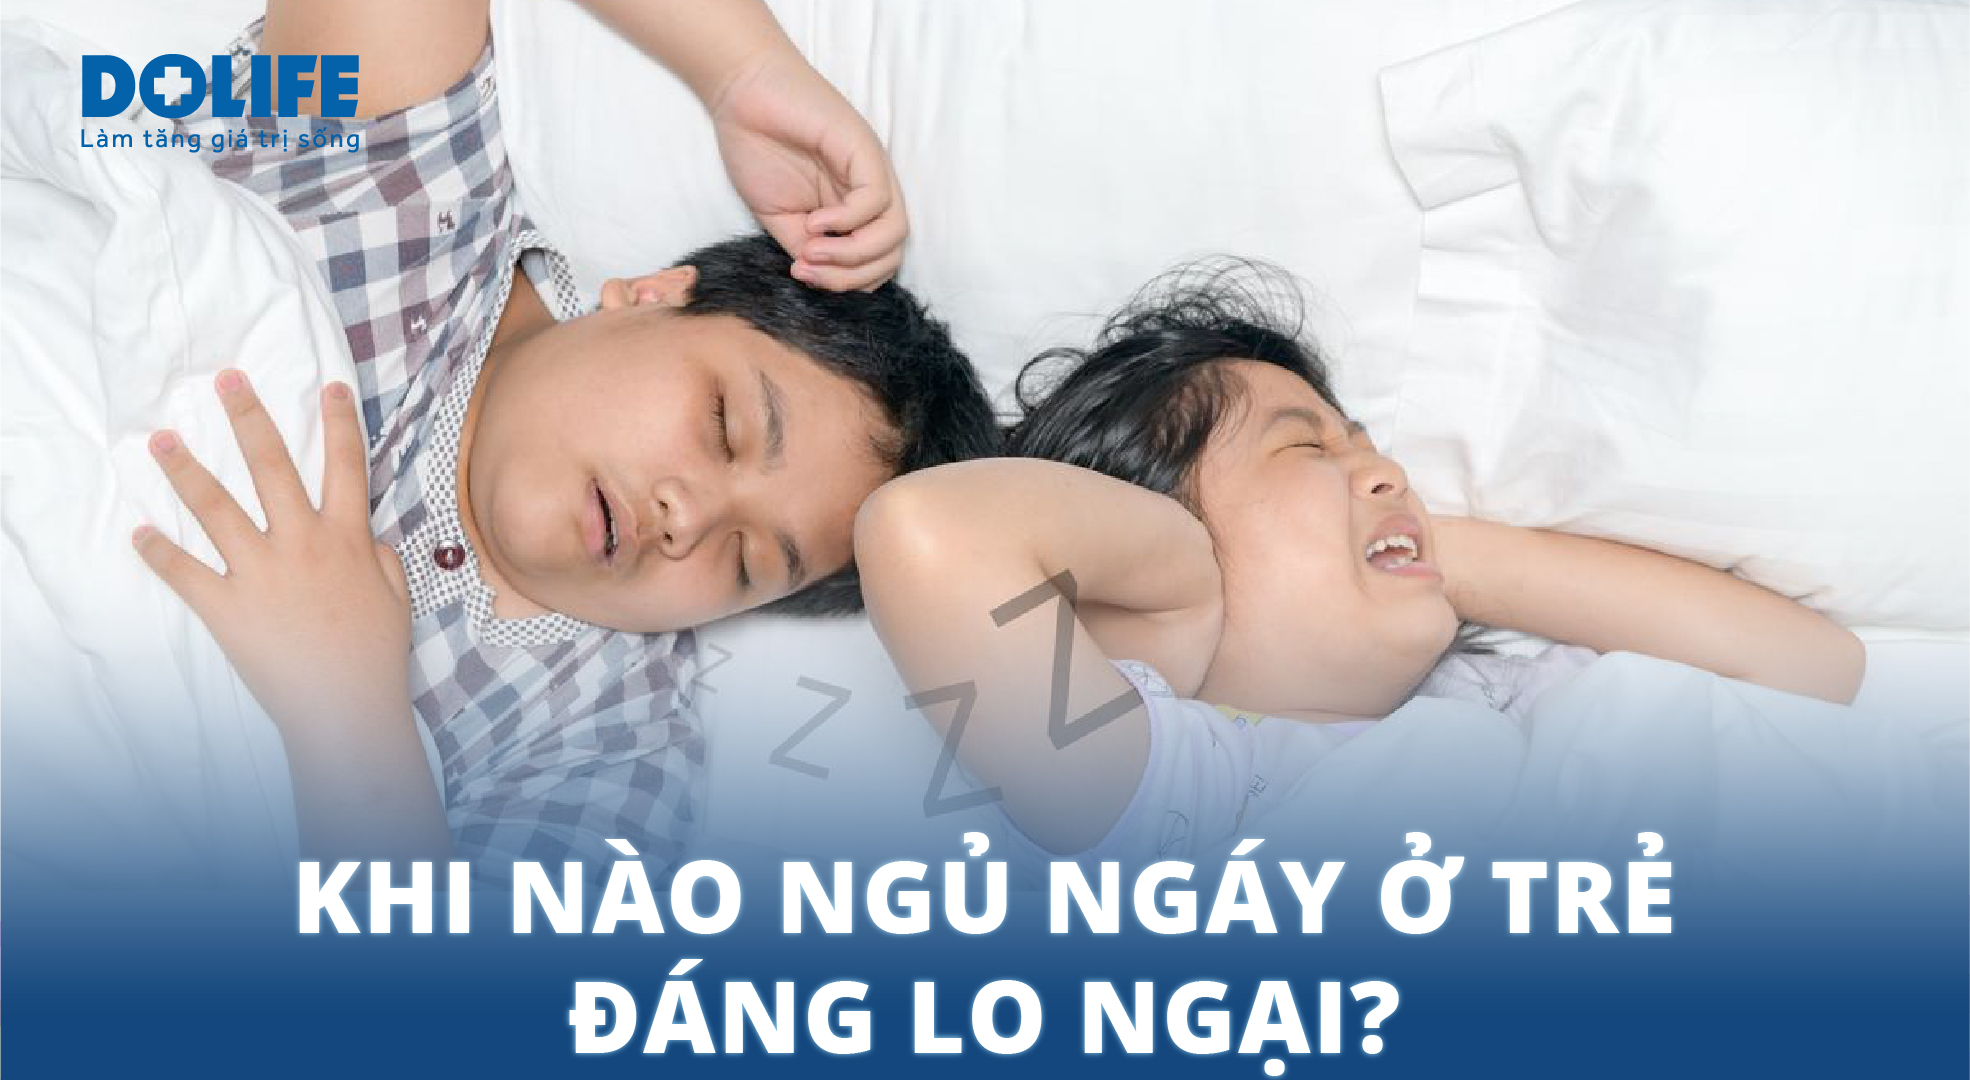 Ngủ ngáy ở trẻ có đáng lo?